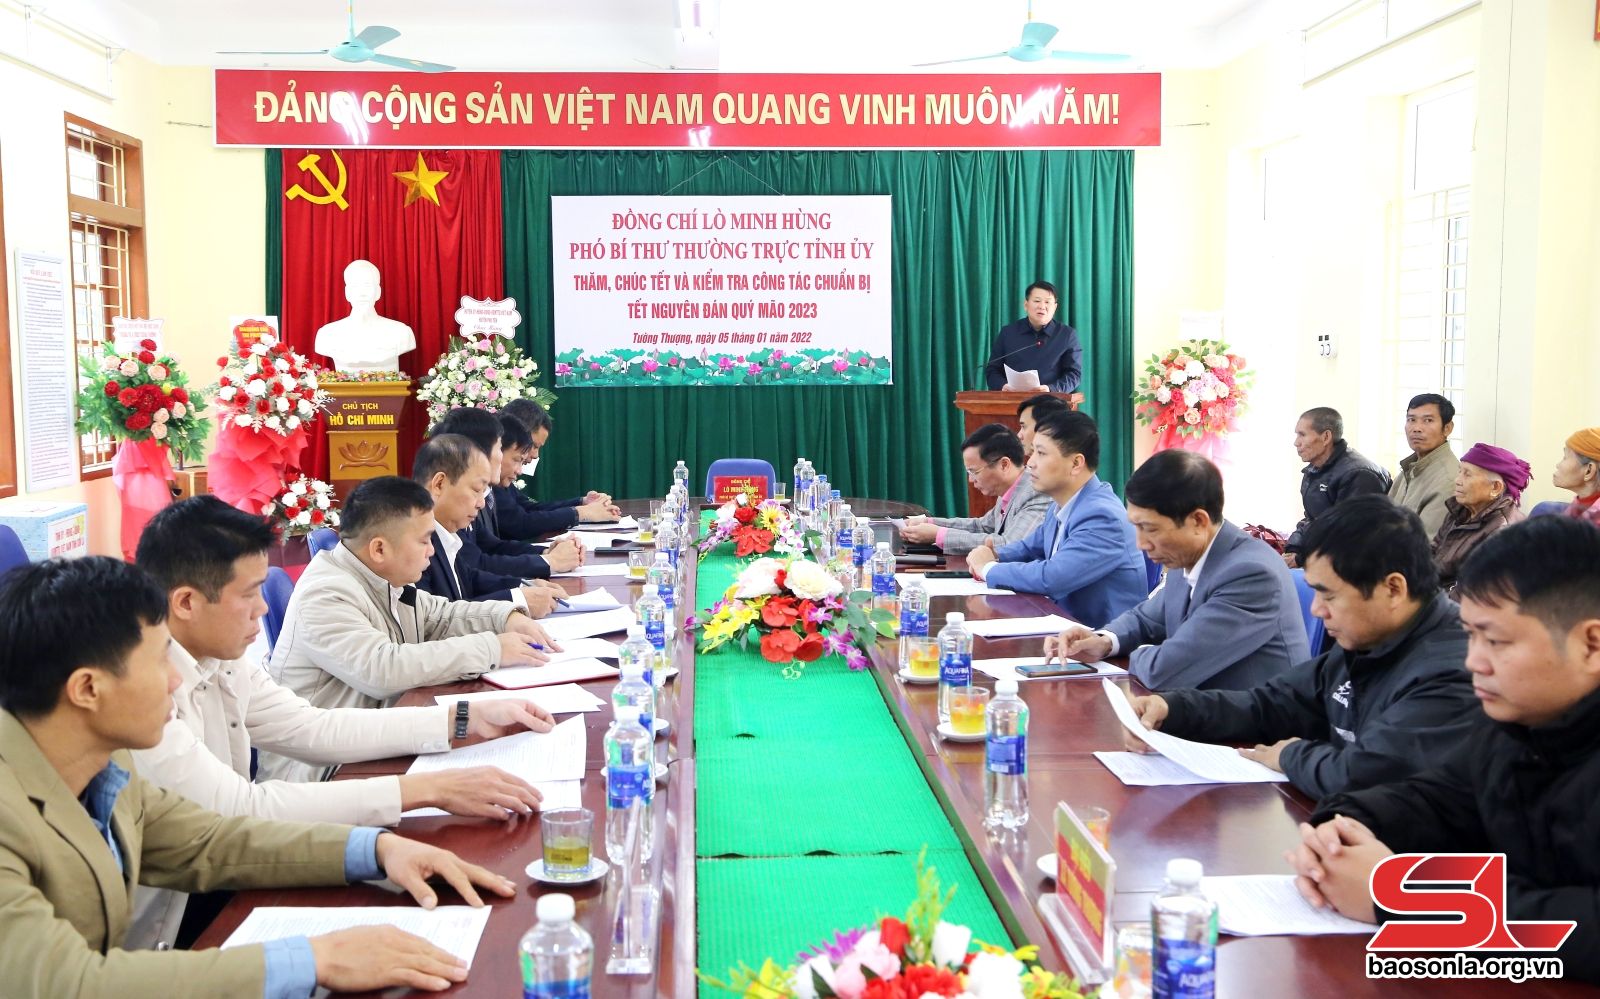 Đồng chí Phó Bí thư Thường trực Tỉnh ủy thăm, chúc tết tại huyện Phù Yên